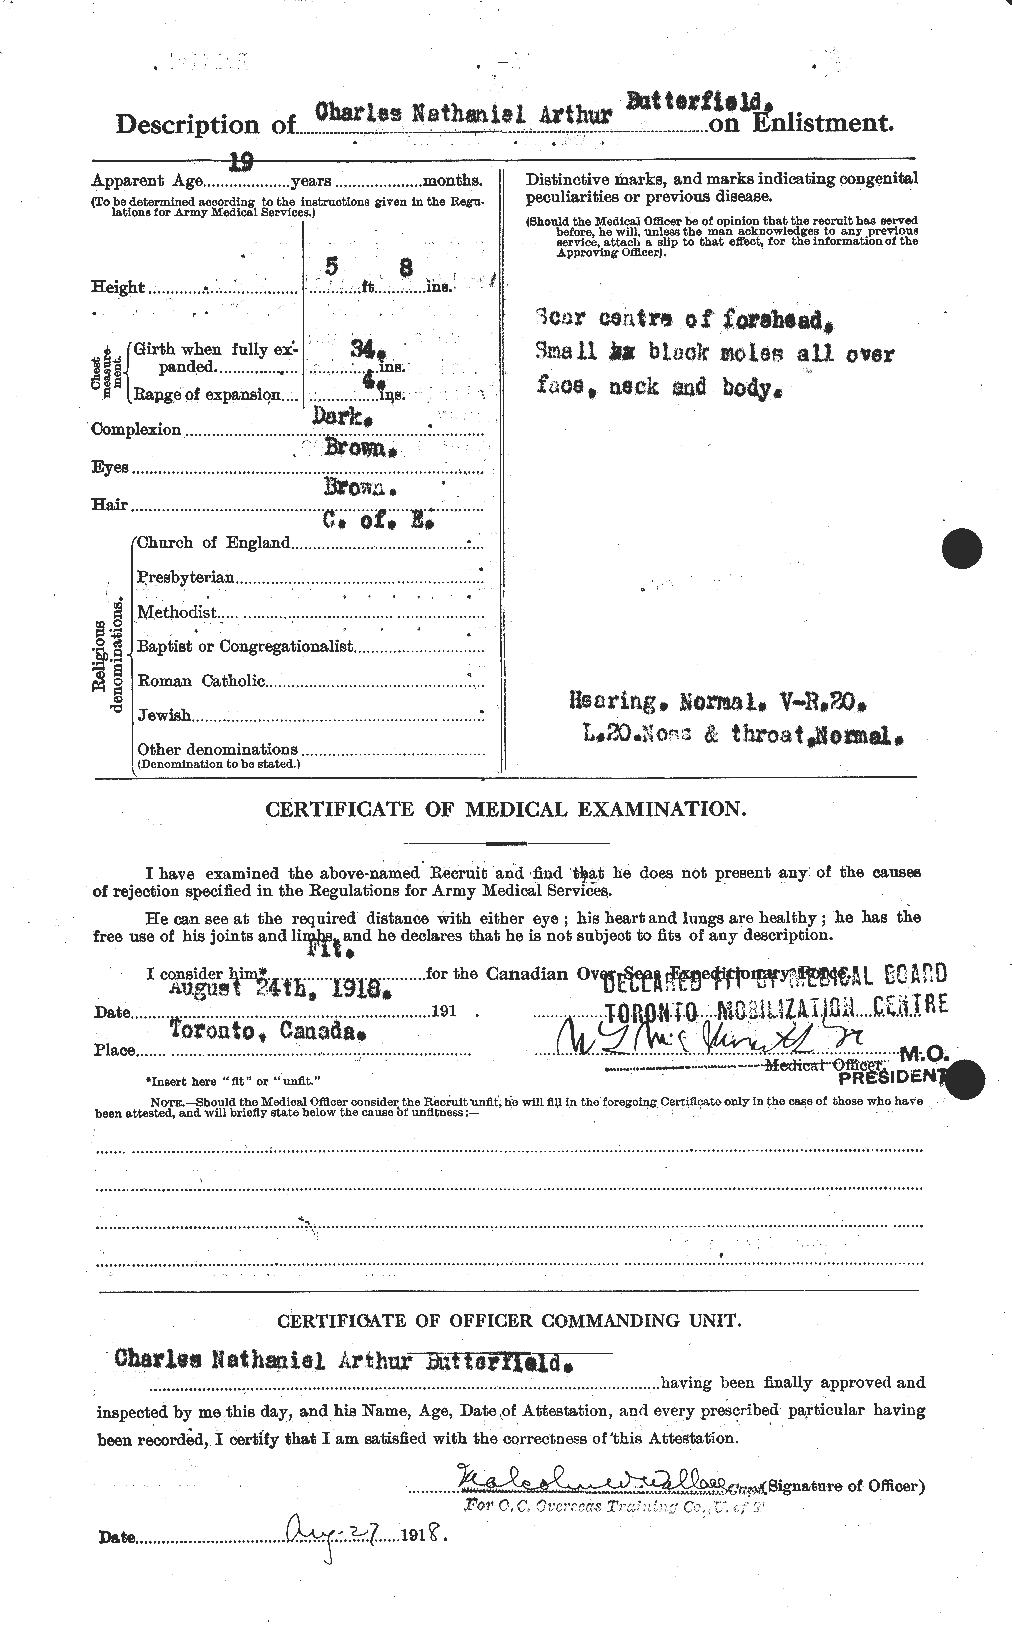 Dossiers du Personnel de la Première Guerre mondiale - CEC 278227b